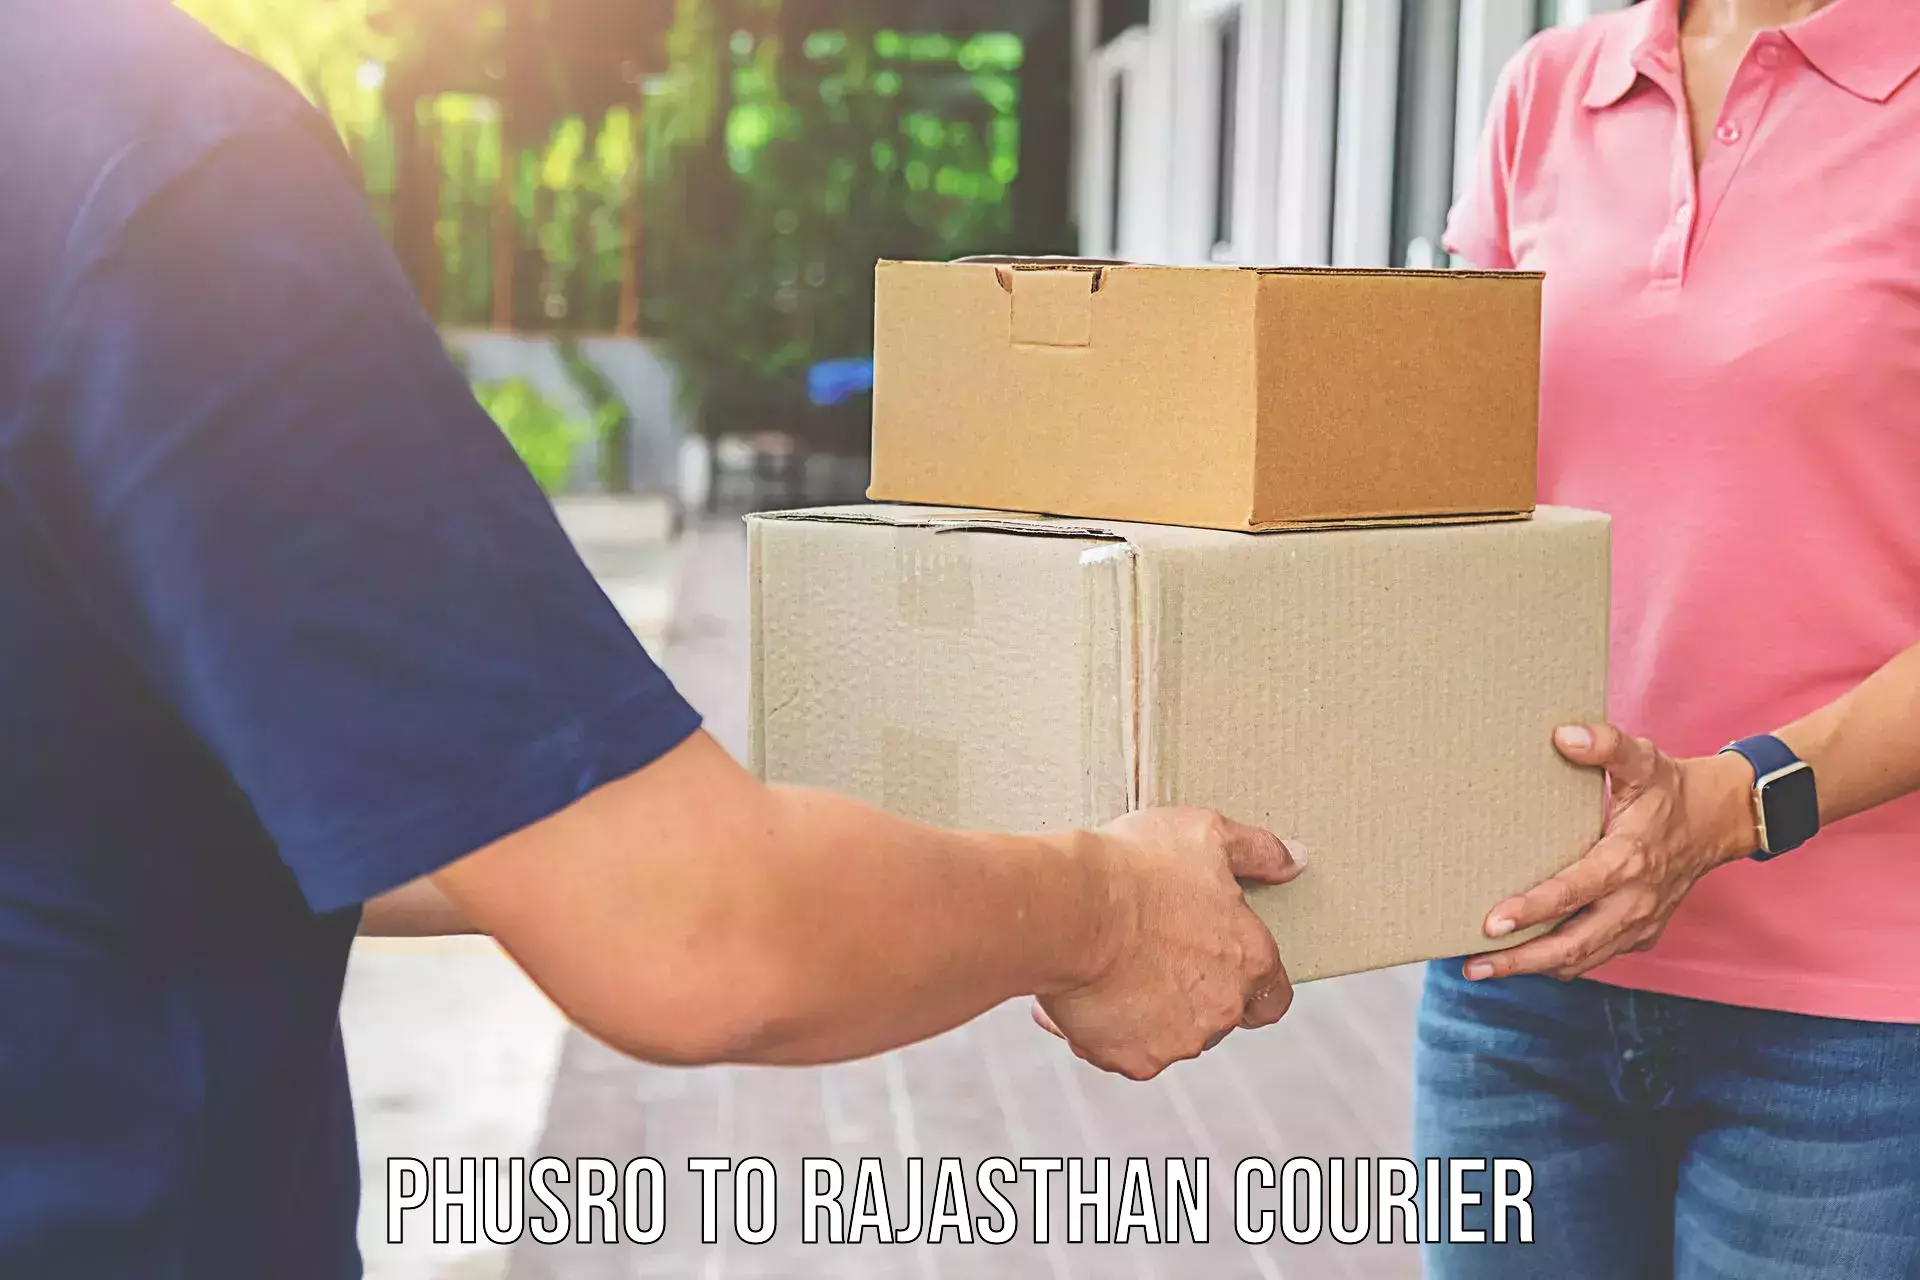 Household moving assistance Phusro to Kankroli